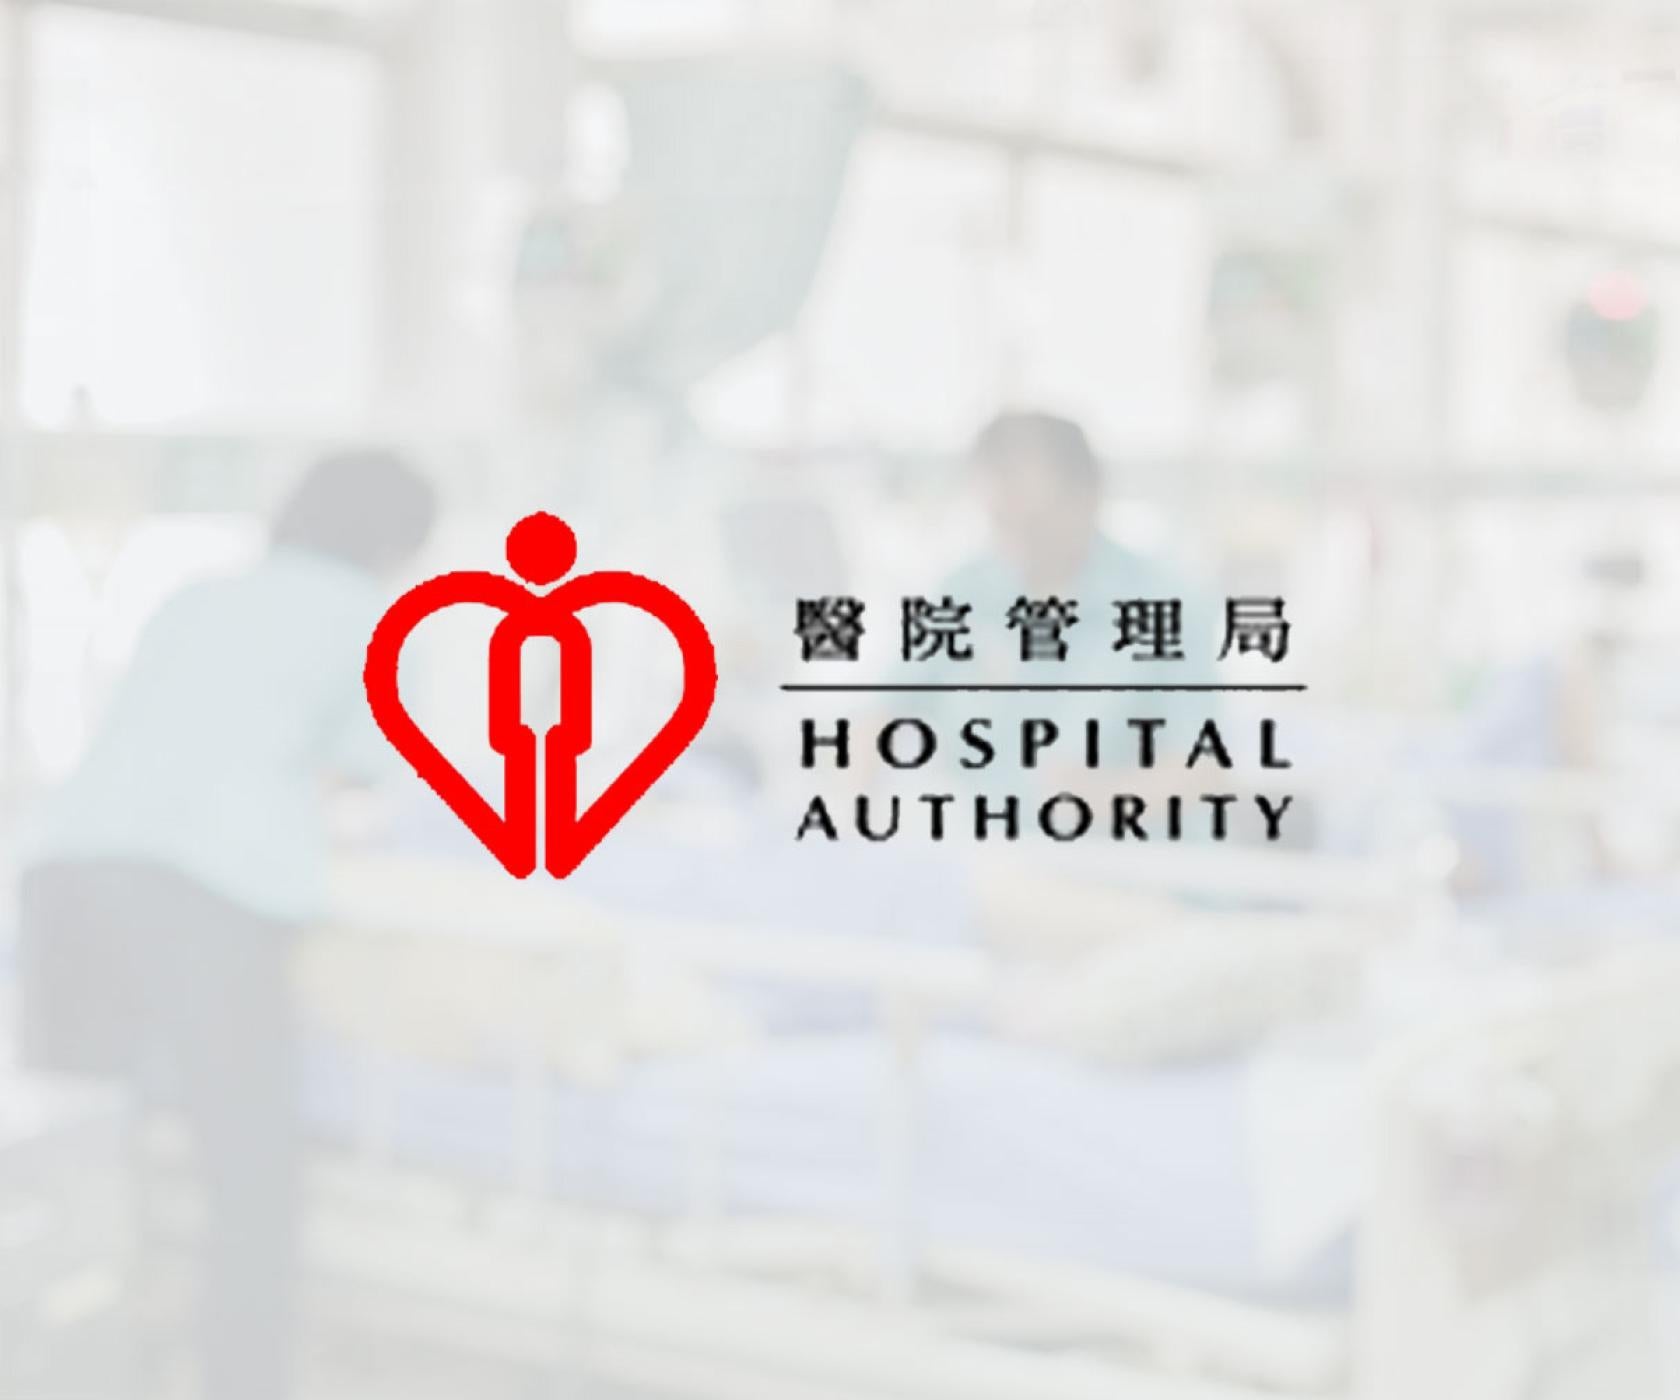 Hospital authority logo